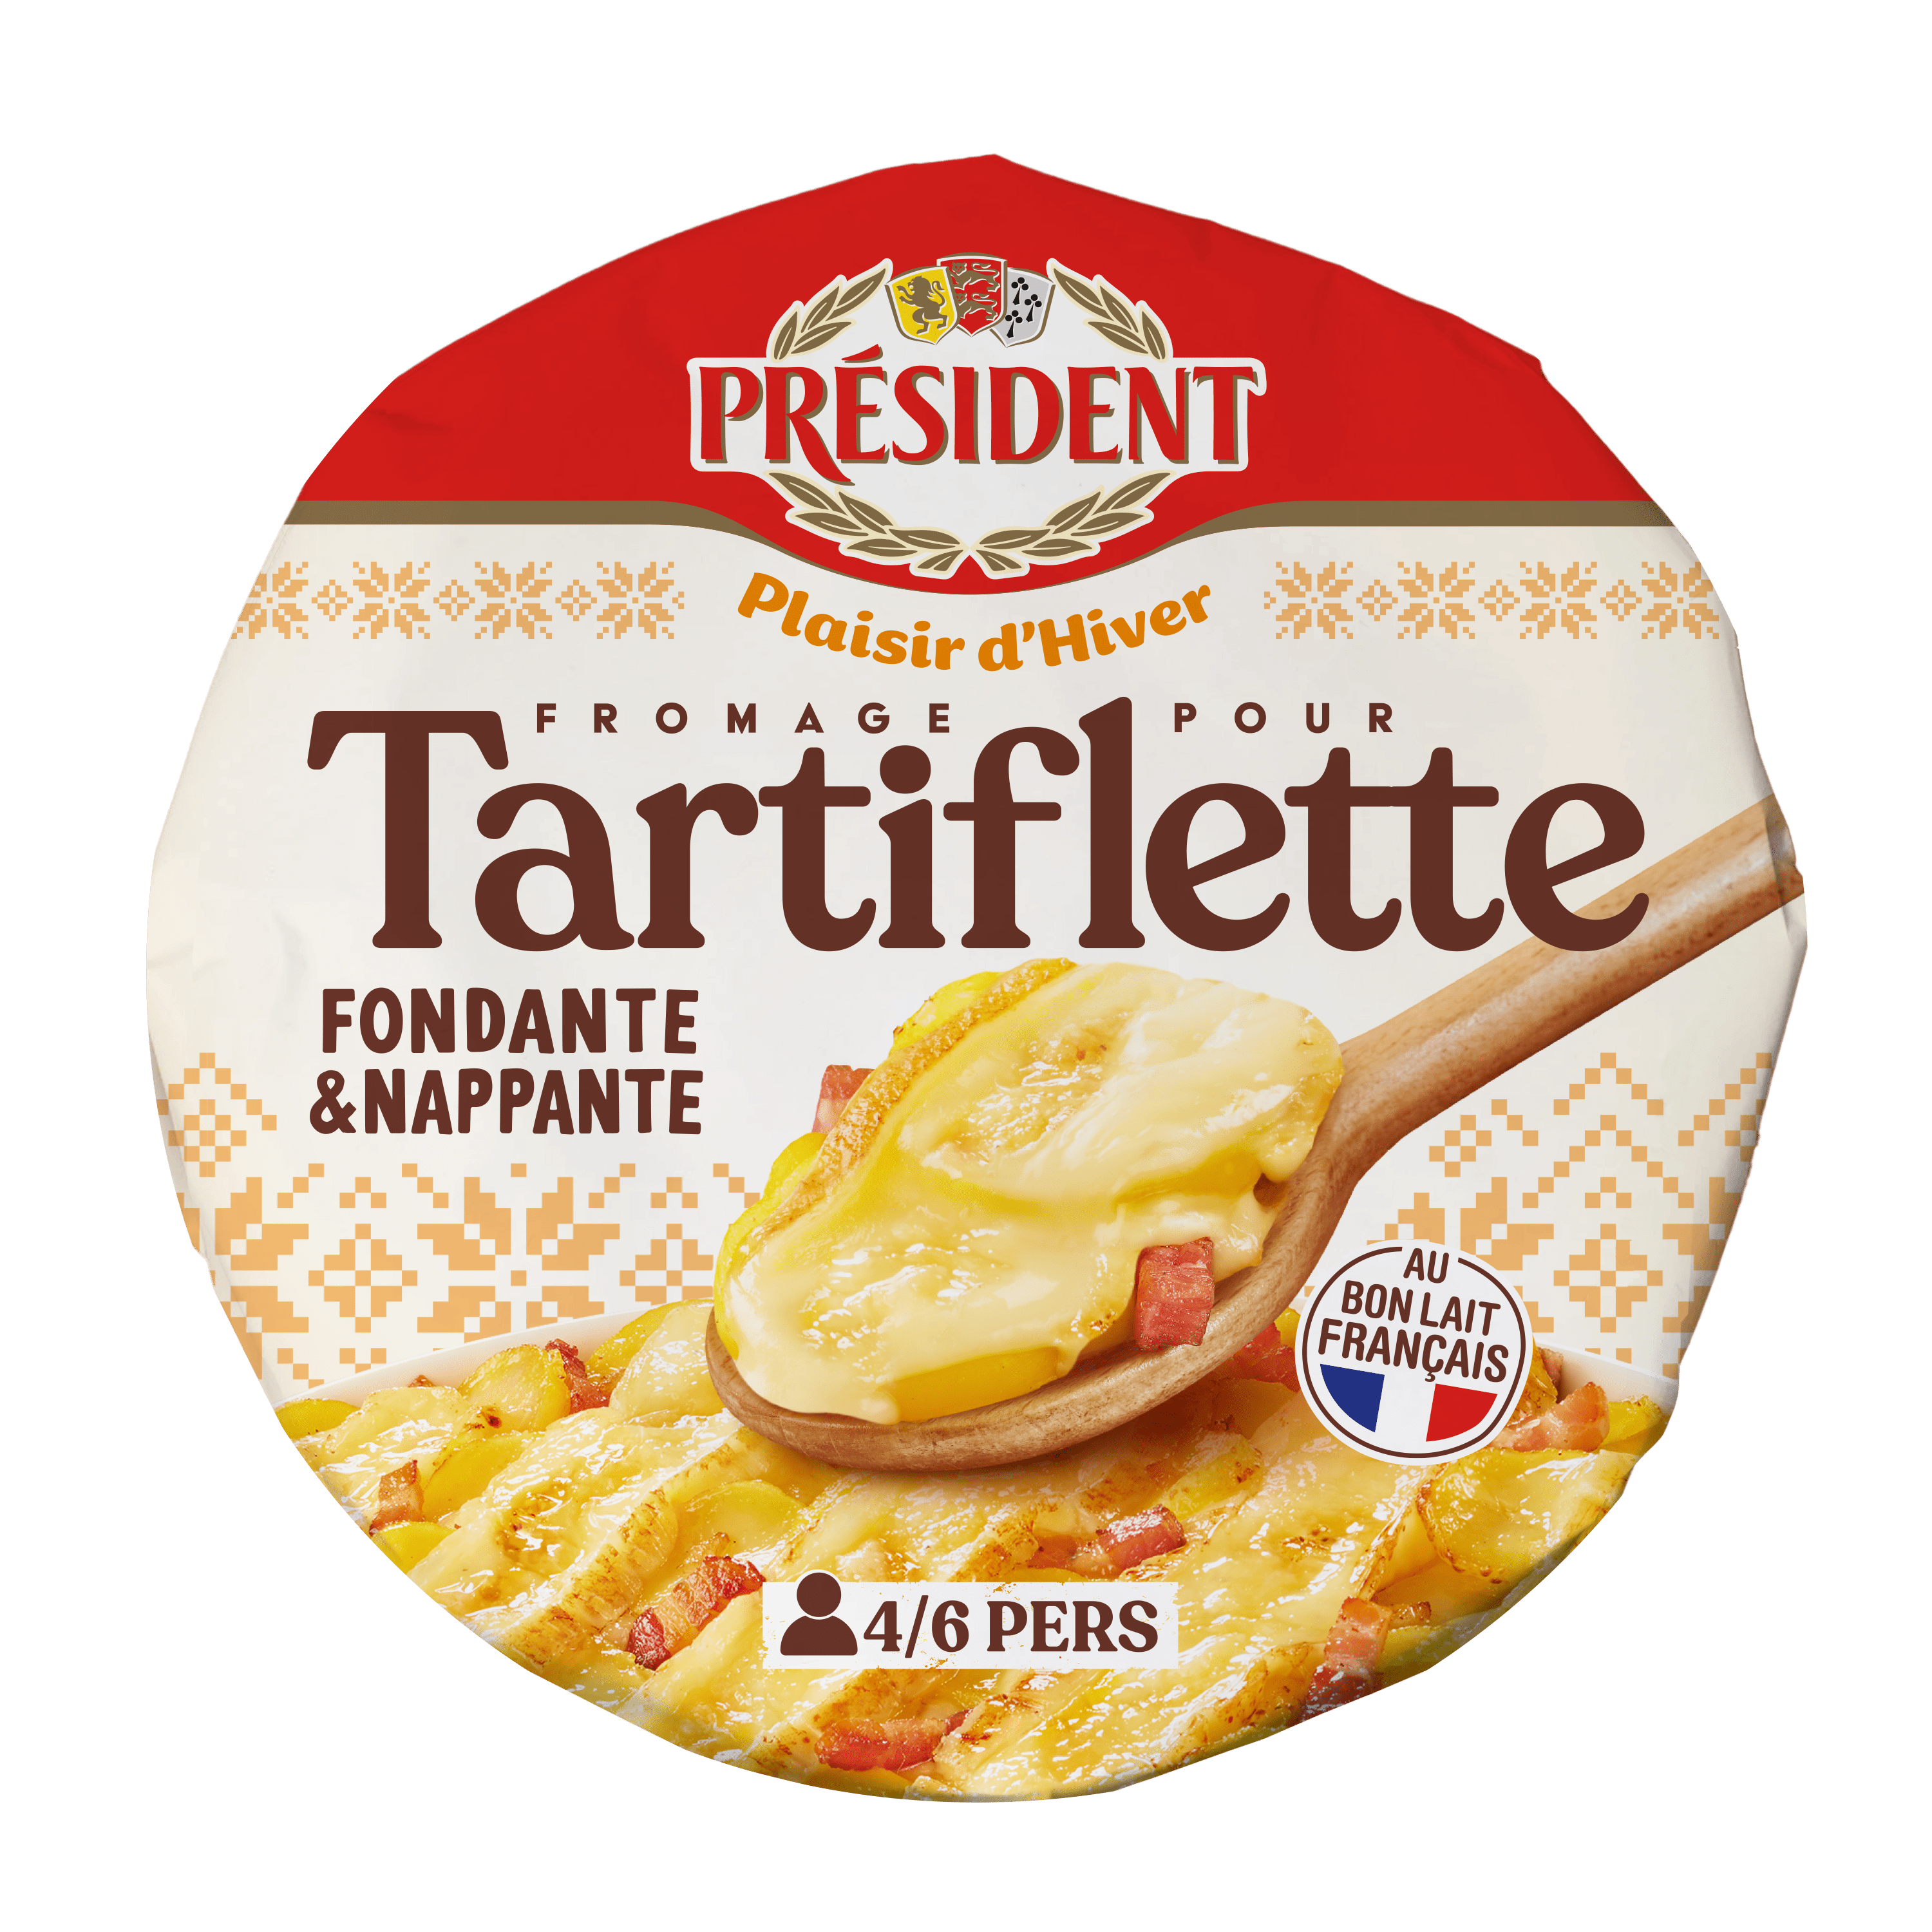 image-Un fromage pour tartiflette à la texture fondante et nappante